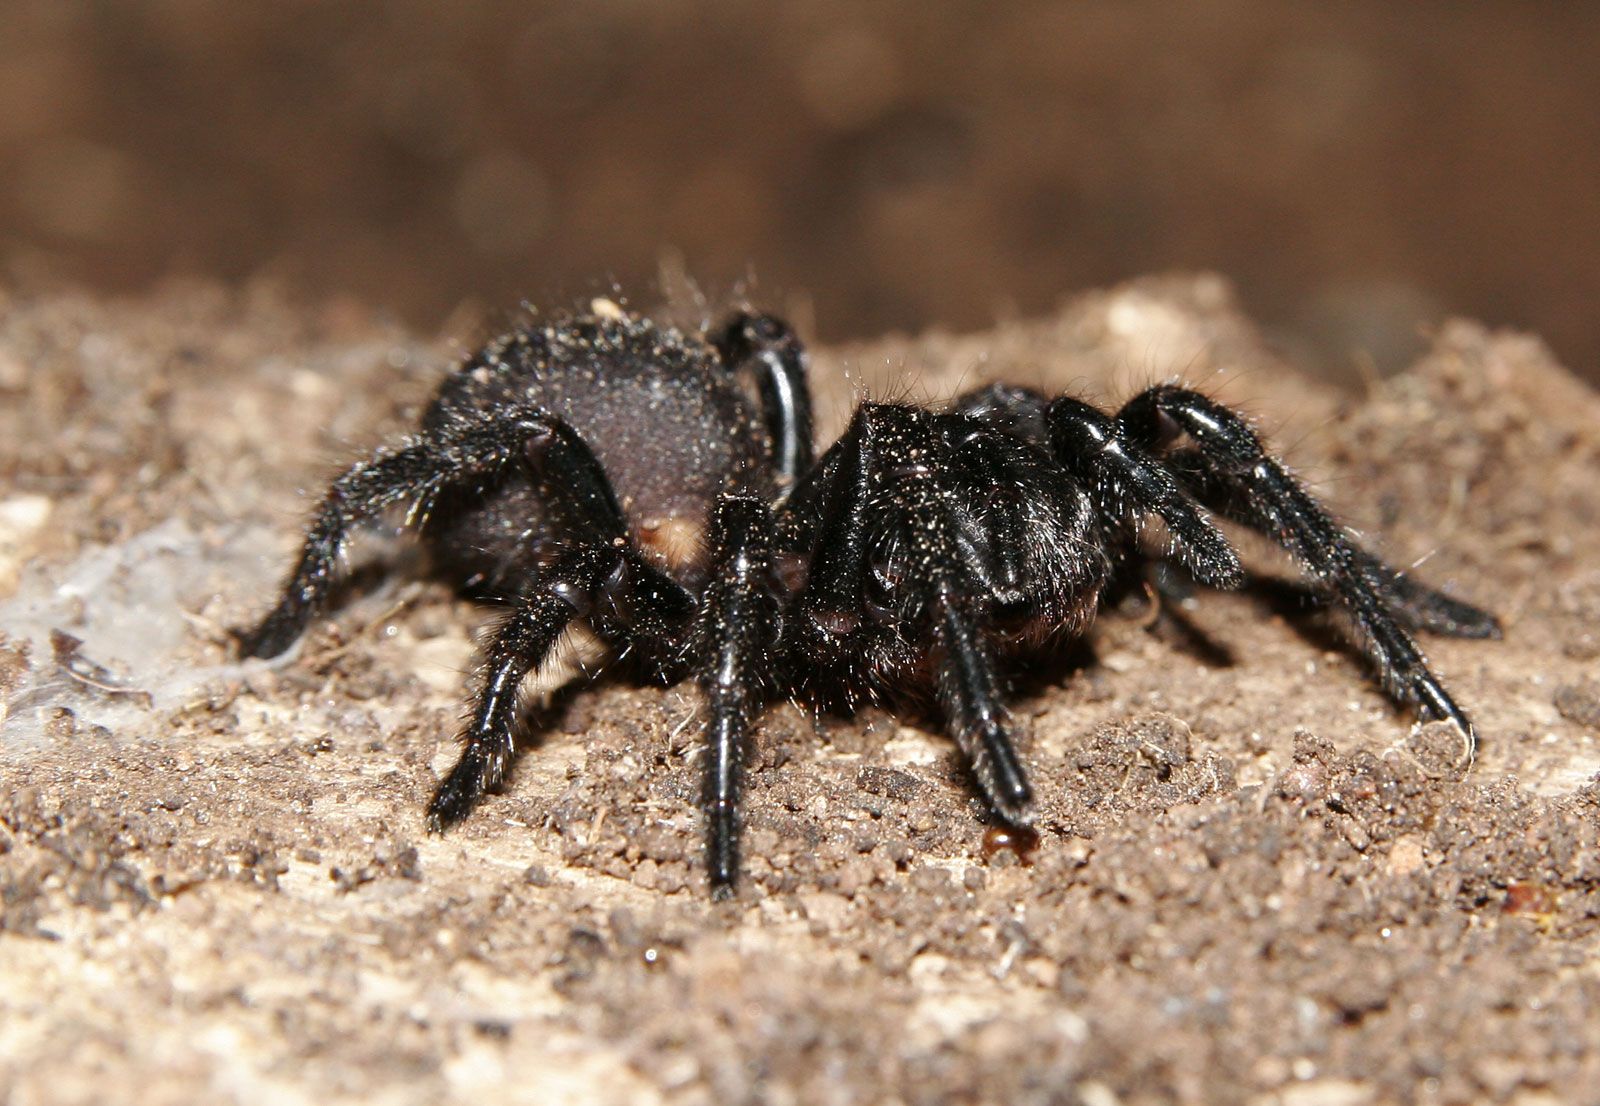 Desivo nechutné pavúky z Austrálie si už môžeš kúpiť aj domov. Najhoršie beštie môžu byť tvoje za stovky eur